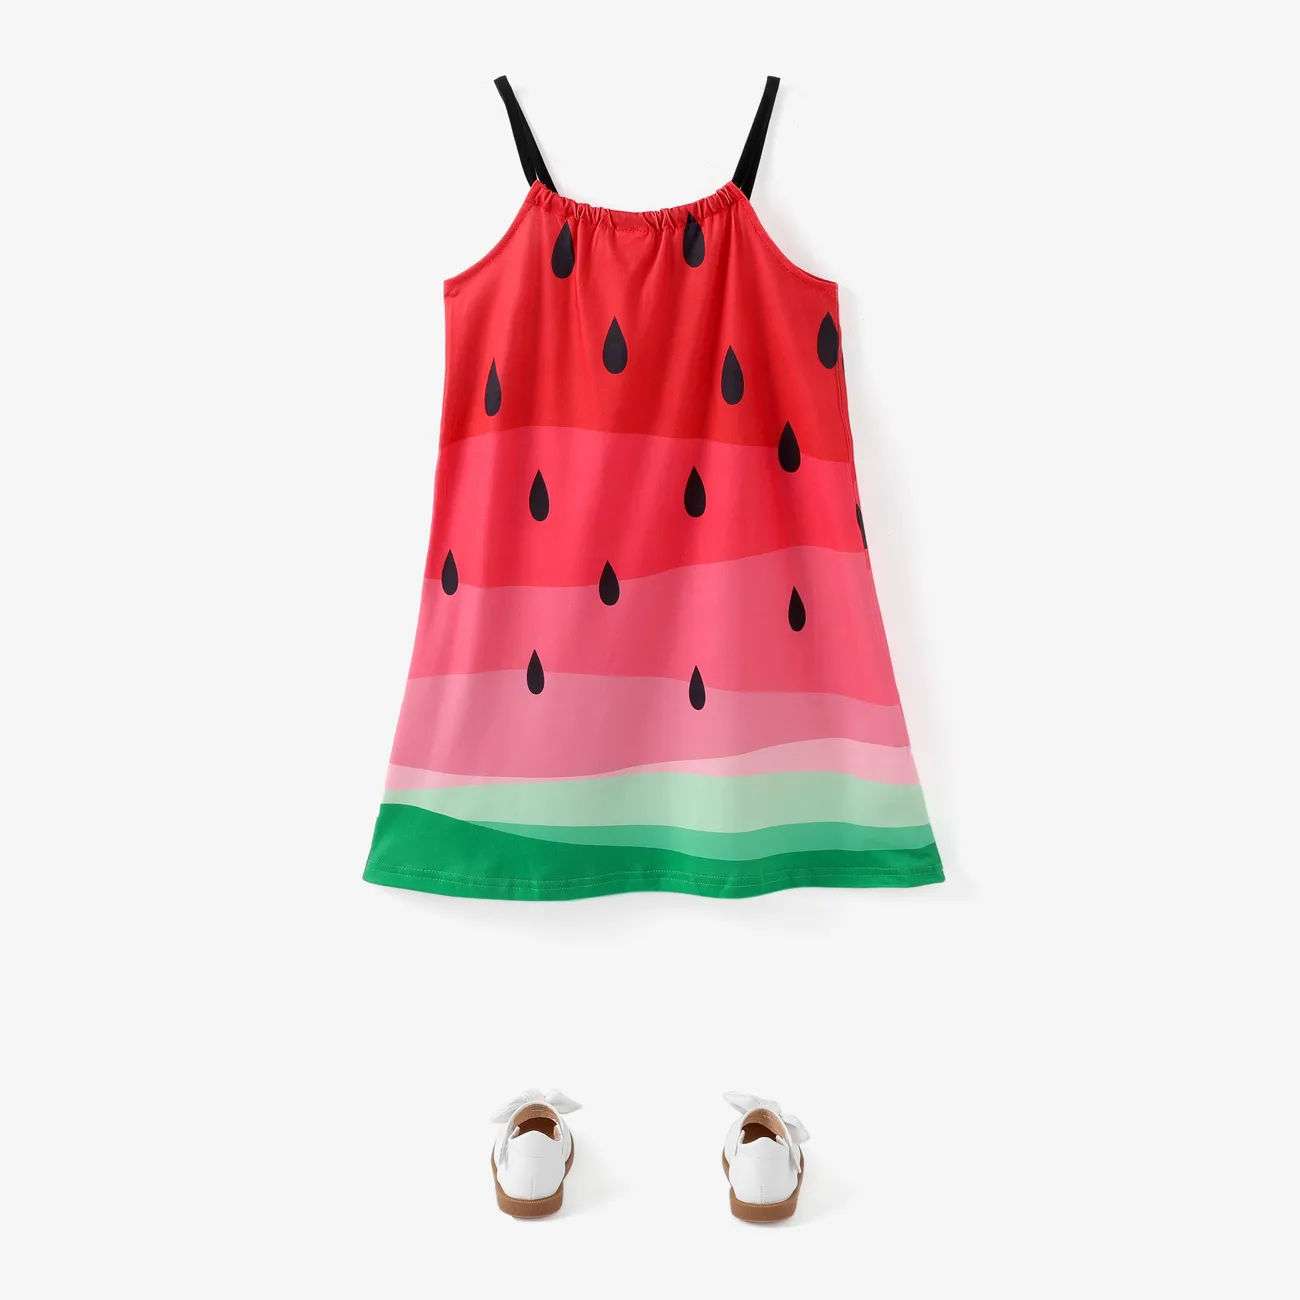 Chicos Chica Camiseta sin mangas Frutas y verduras Vestidos Melon rojo big image 1